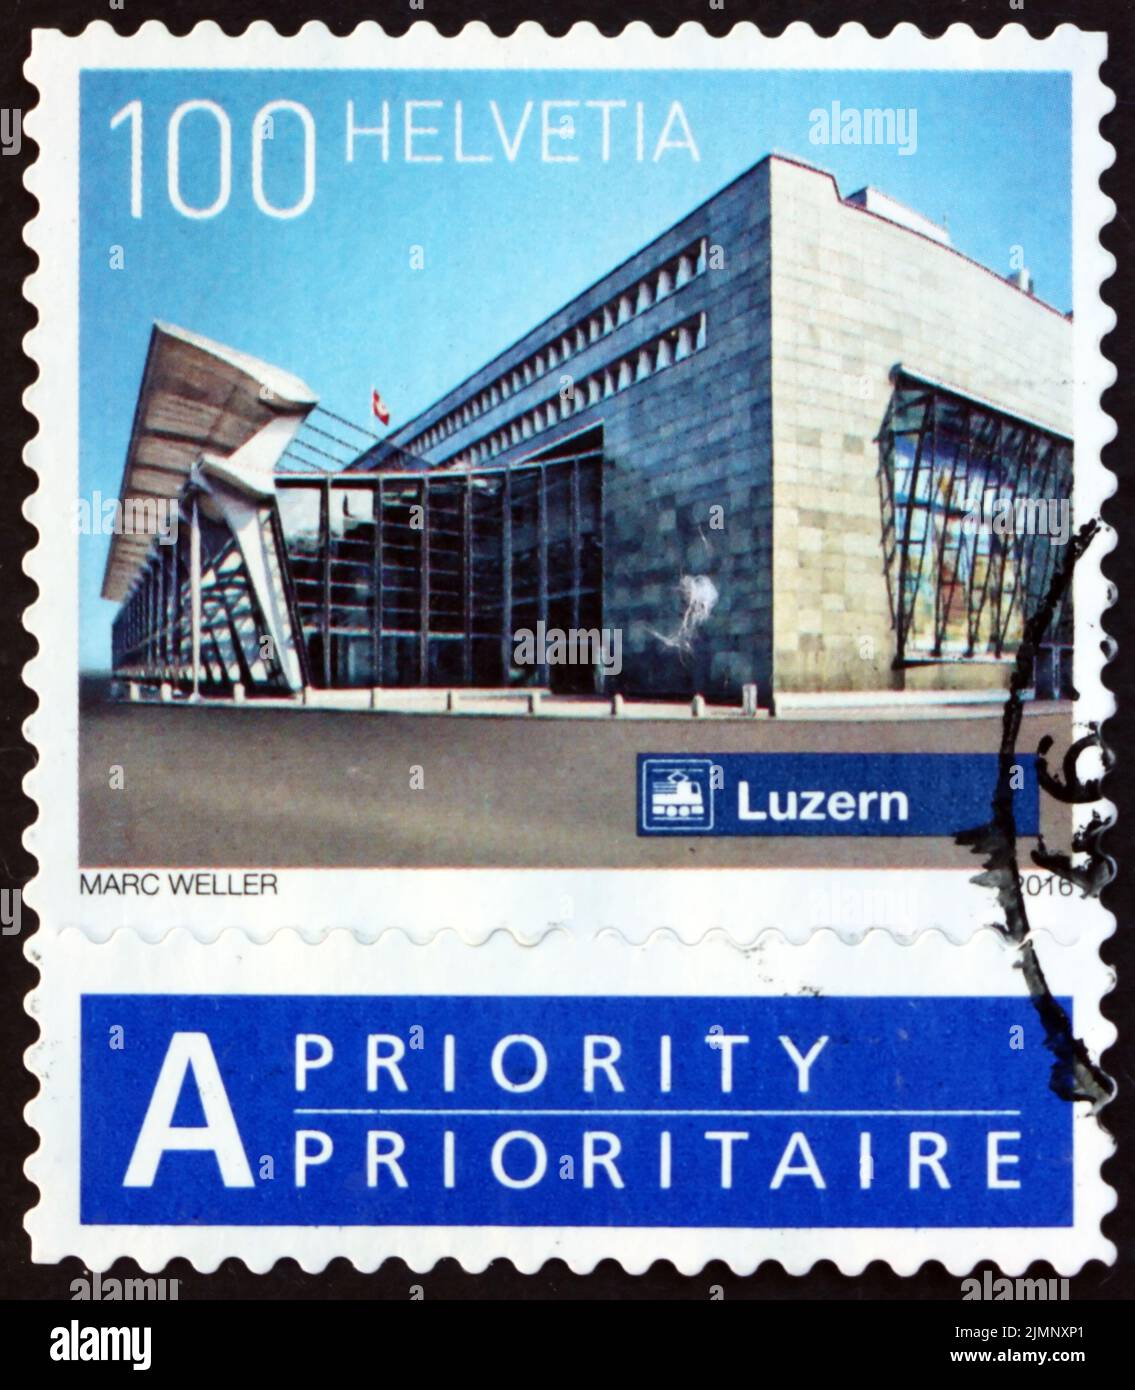 SVIZZERA - CIRCA 2016: Un francobollo stampato in Svizzera mostra Lucerna, stazione ferroviaria svizzera, circa 2016 Foto Stock